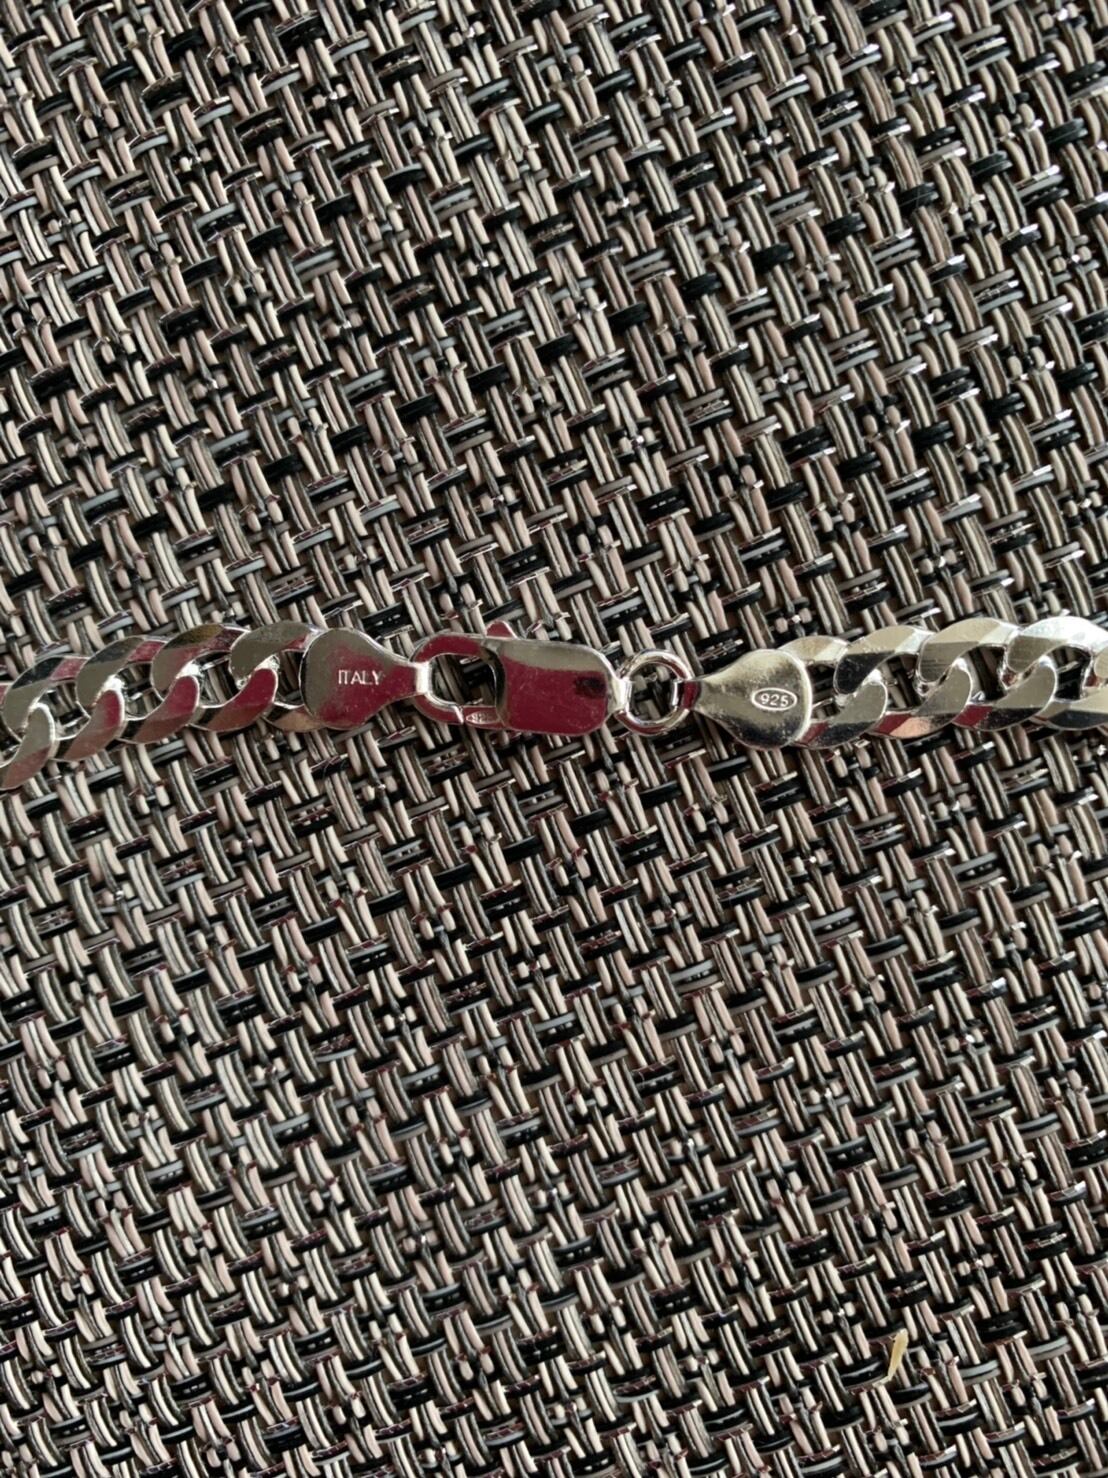 イタリア シルバー 925 喜平 チェーン ネックレス Itary Silver Curb Chain Necklace   サイズ：55cm  シルバーアクセサリー 6面カット  メンズ  レディース  【新品】